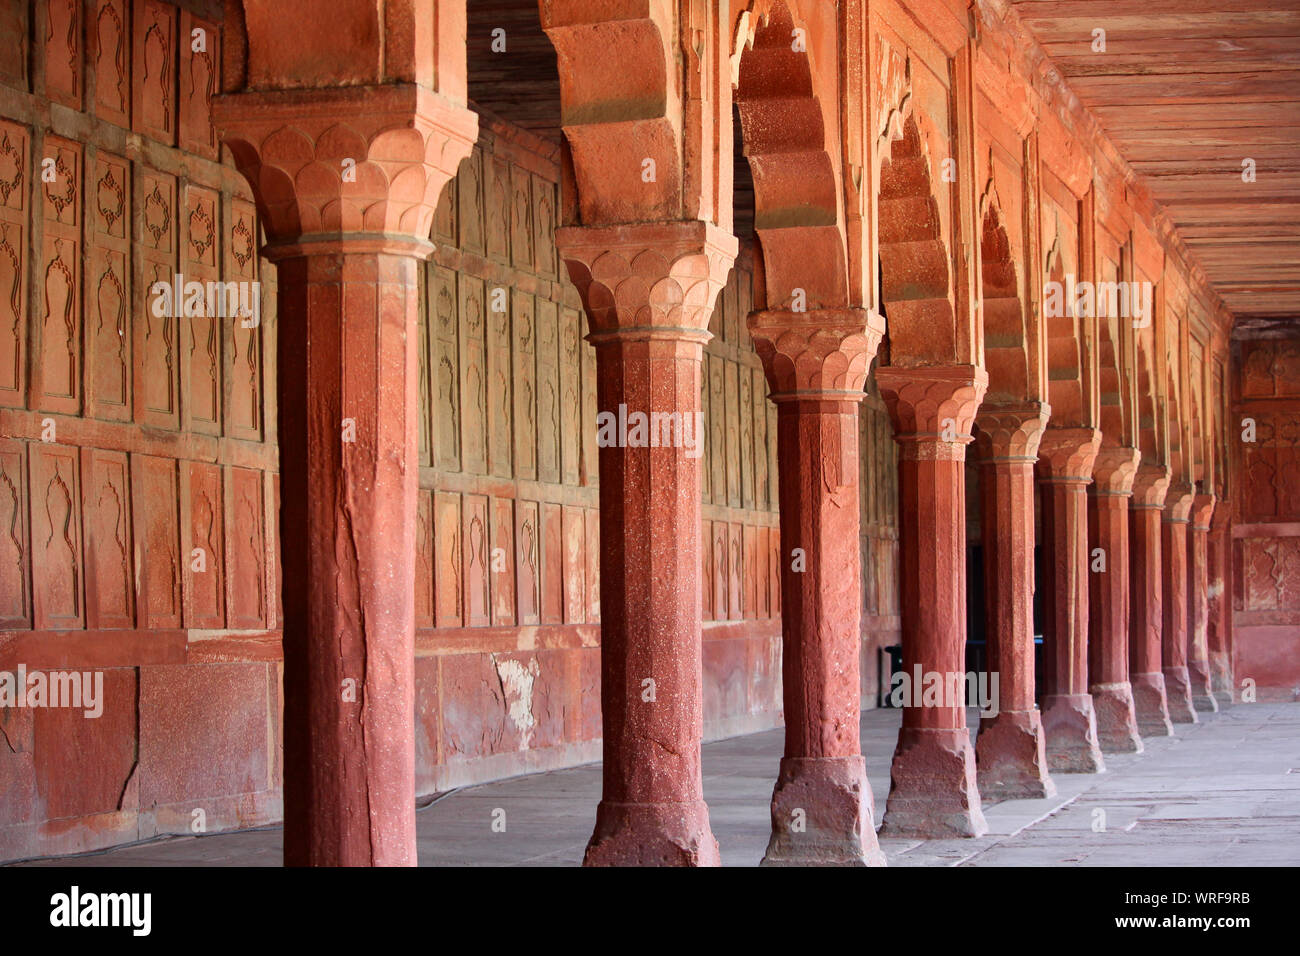 Die Säulen und Bögen in einem alten Fort in der Gestaltung der traditionellen islamischen Architektur. Stockfoto